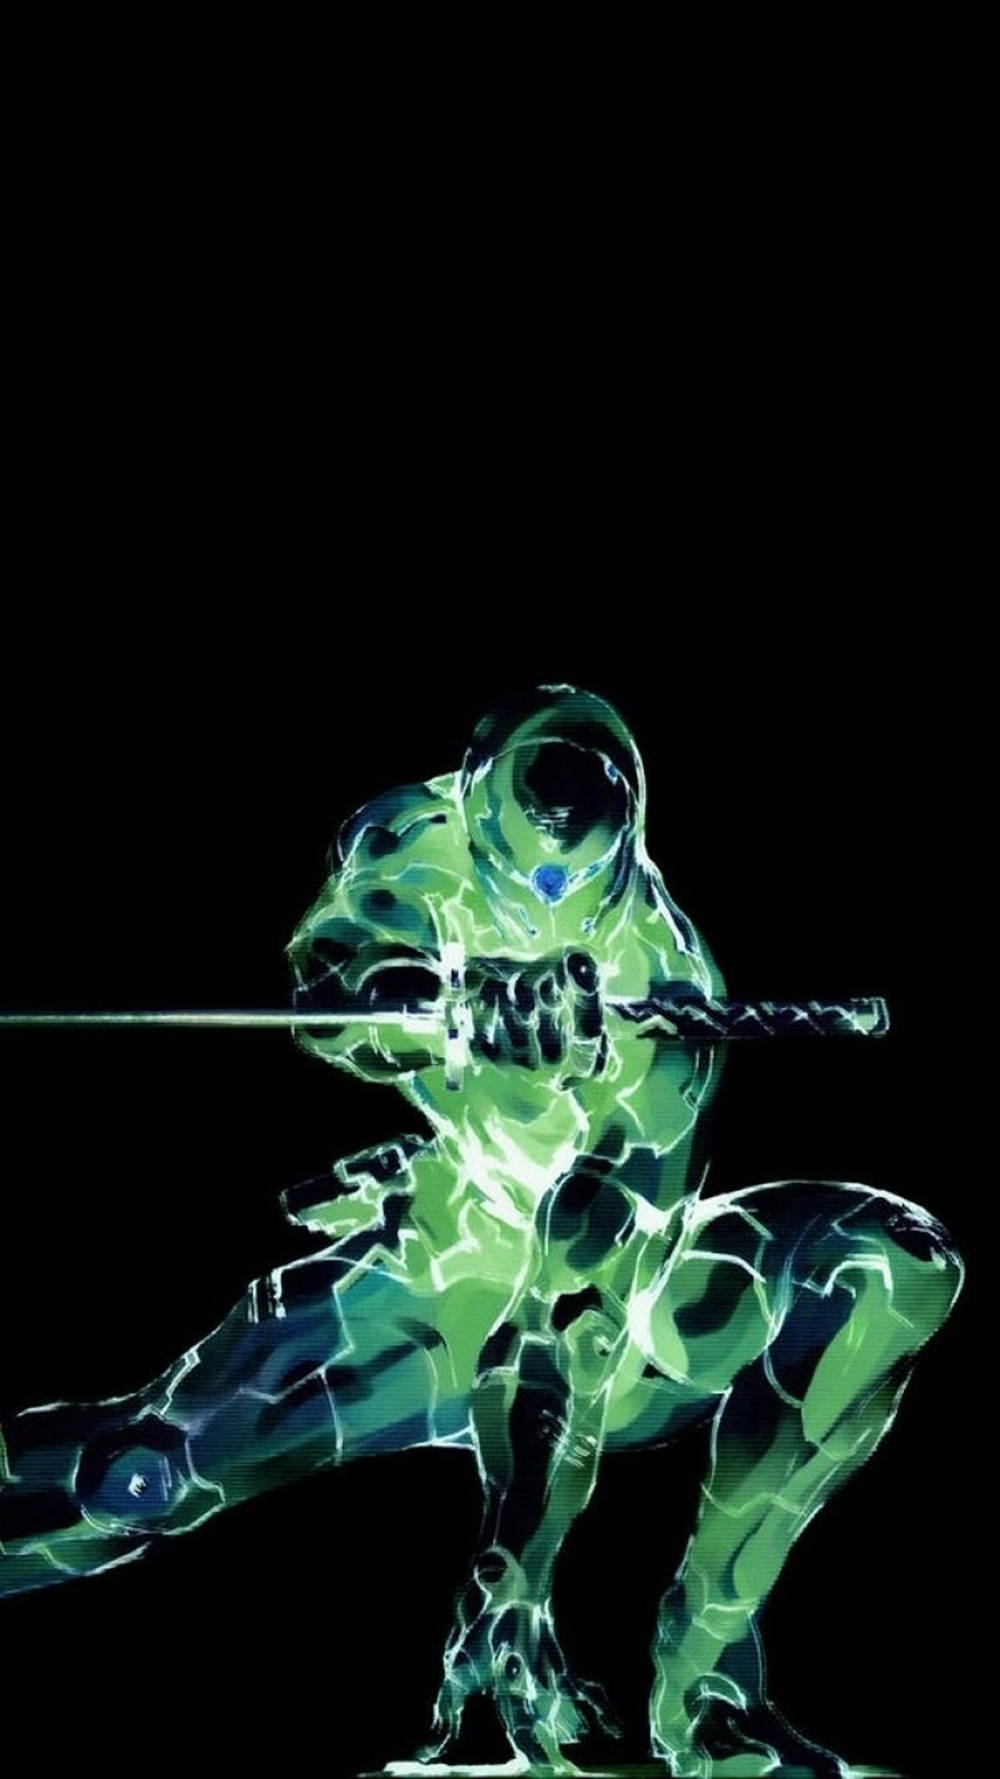 Iphonegaming Metal Gear Green Character - Juego De Iphone Con El Personaje Verde De Metal Gear. Fondo de pantalla